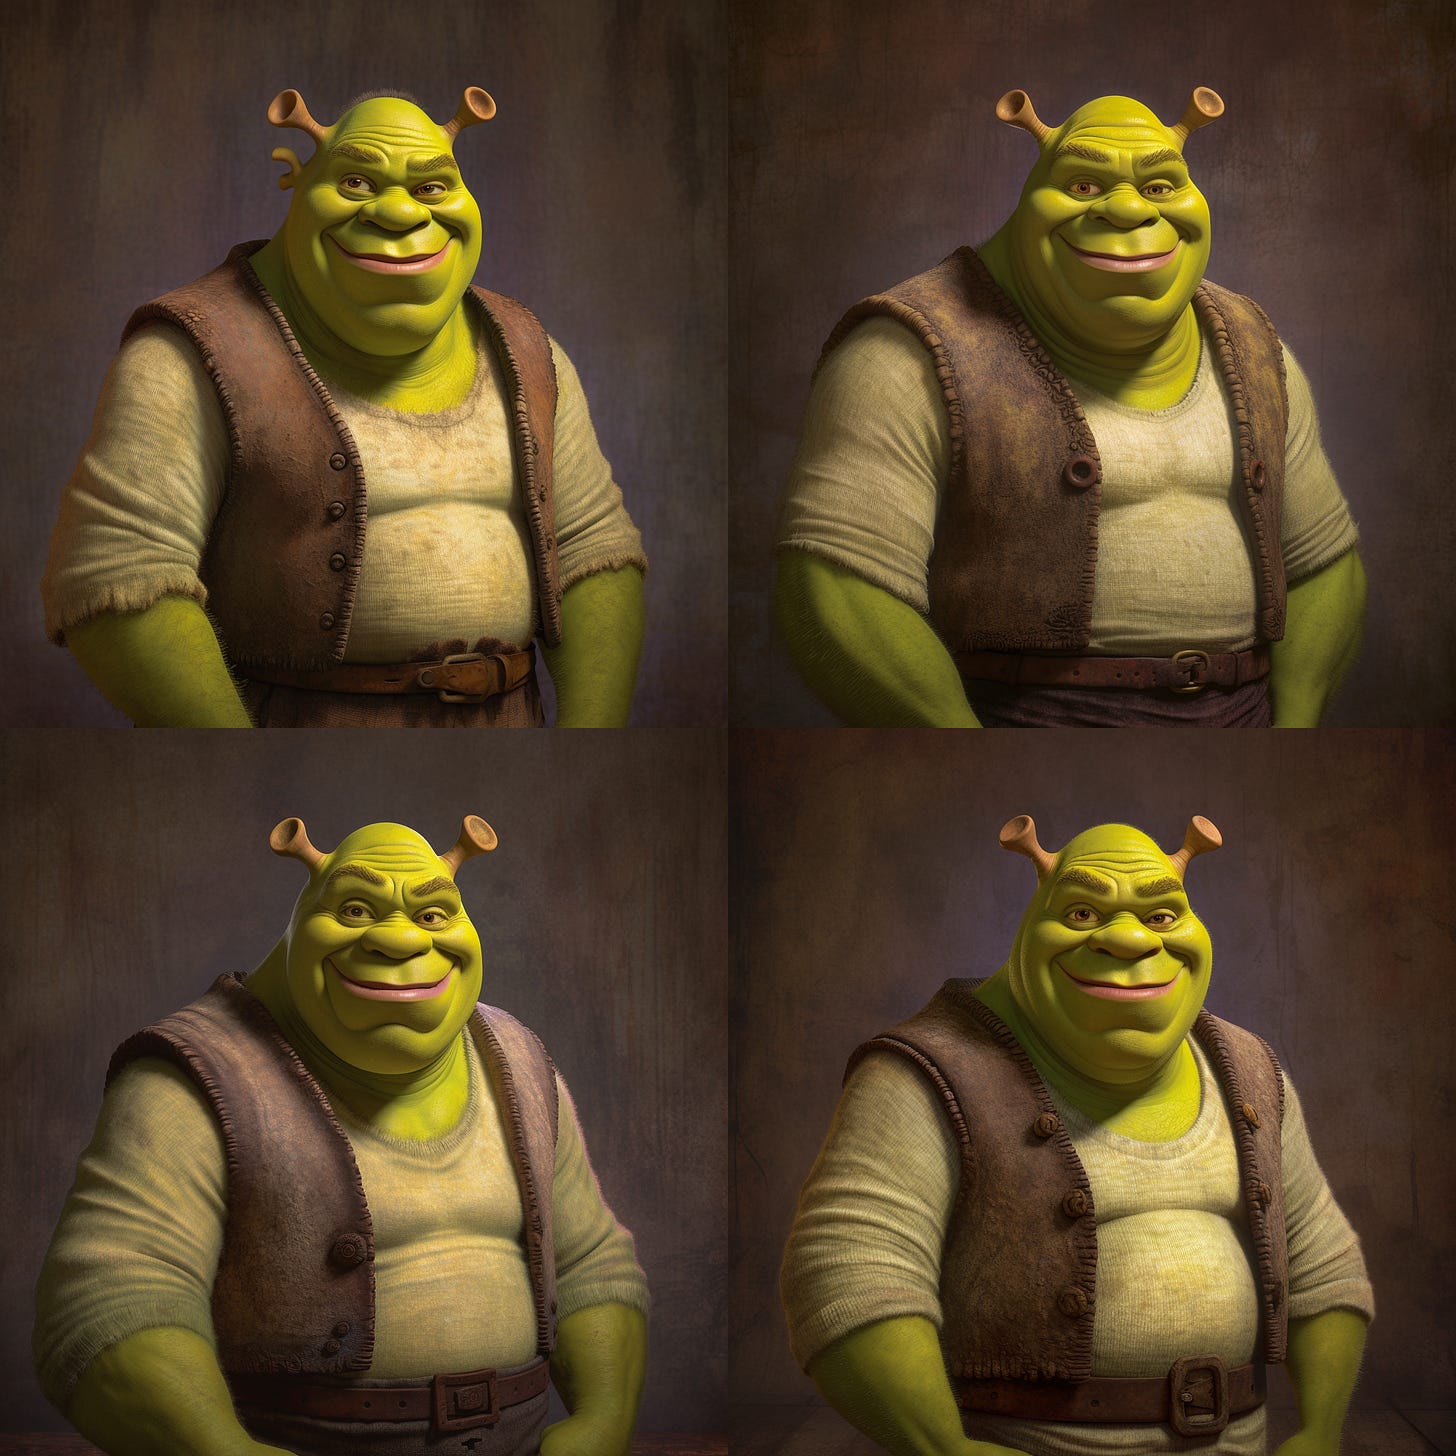 Four Shrek image variations based on original image #3